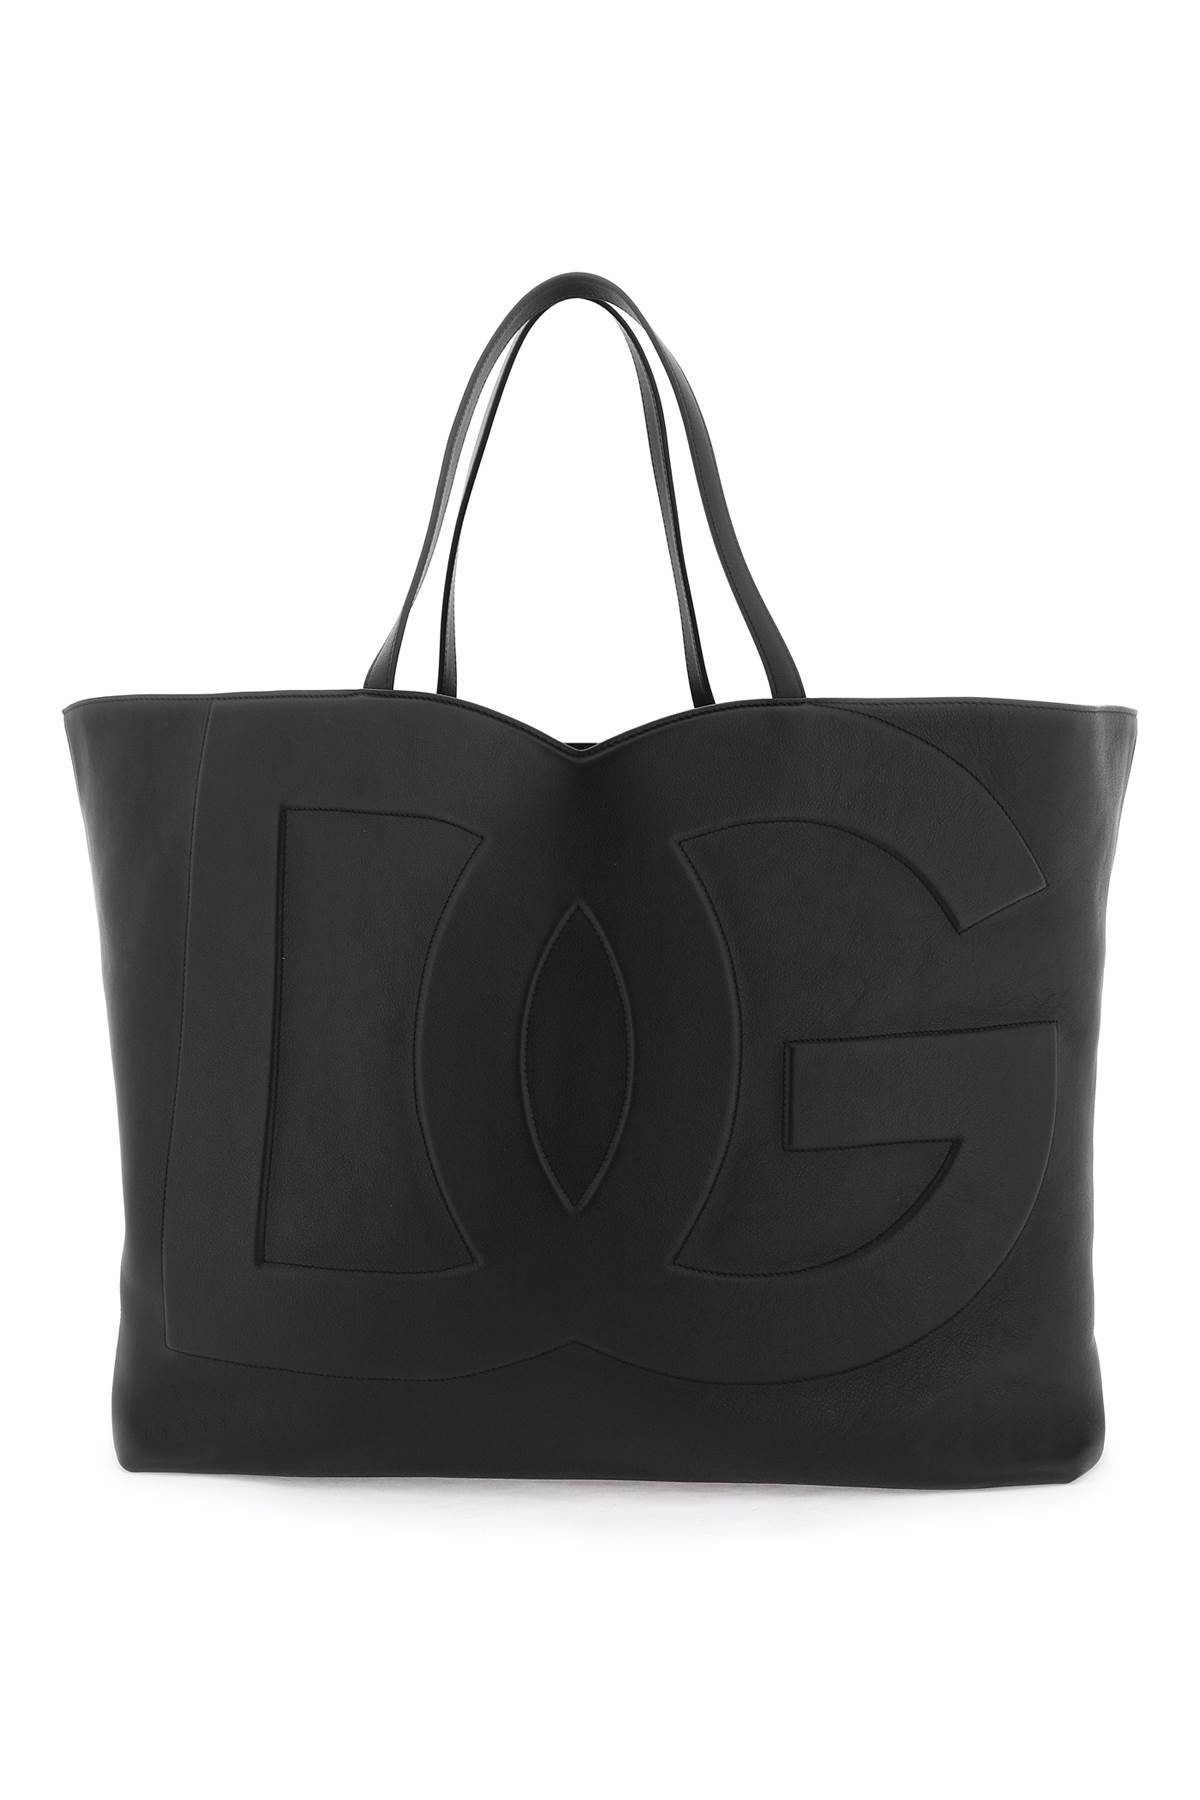 Dolce & Gabbana DOLCE & GABBANA large dg logo shopping bag